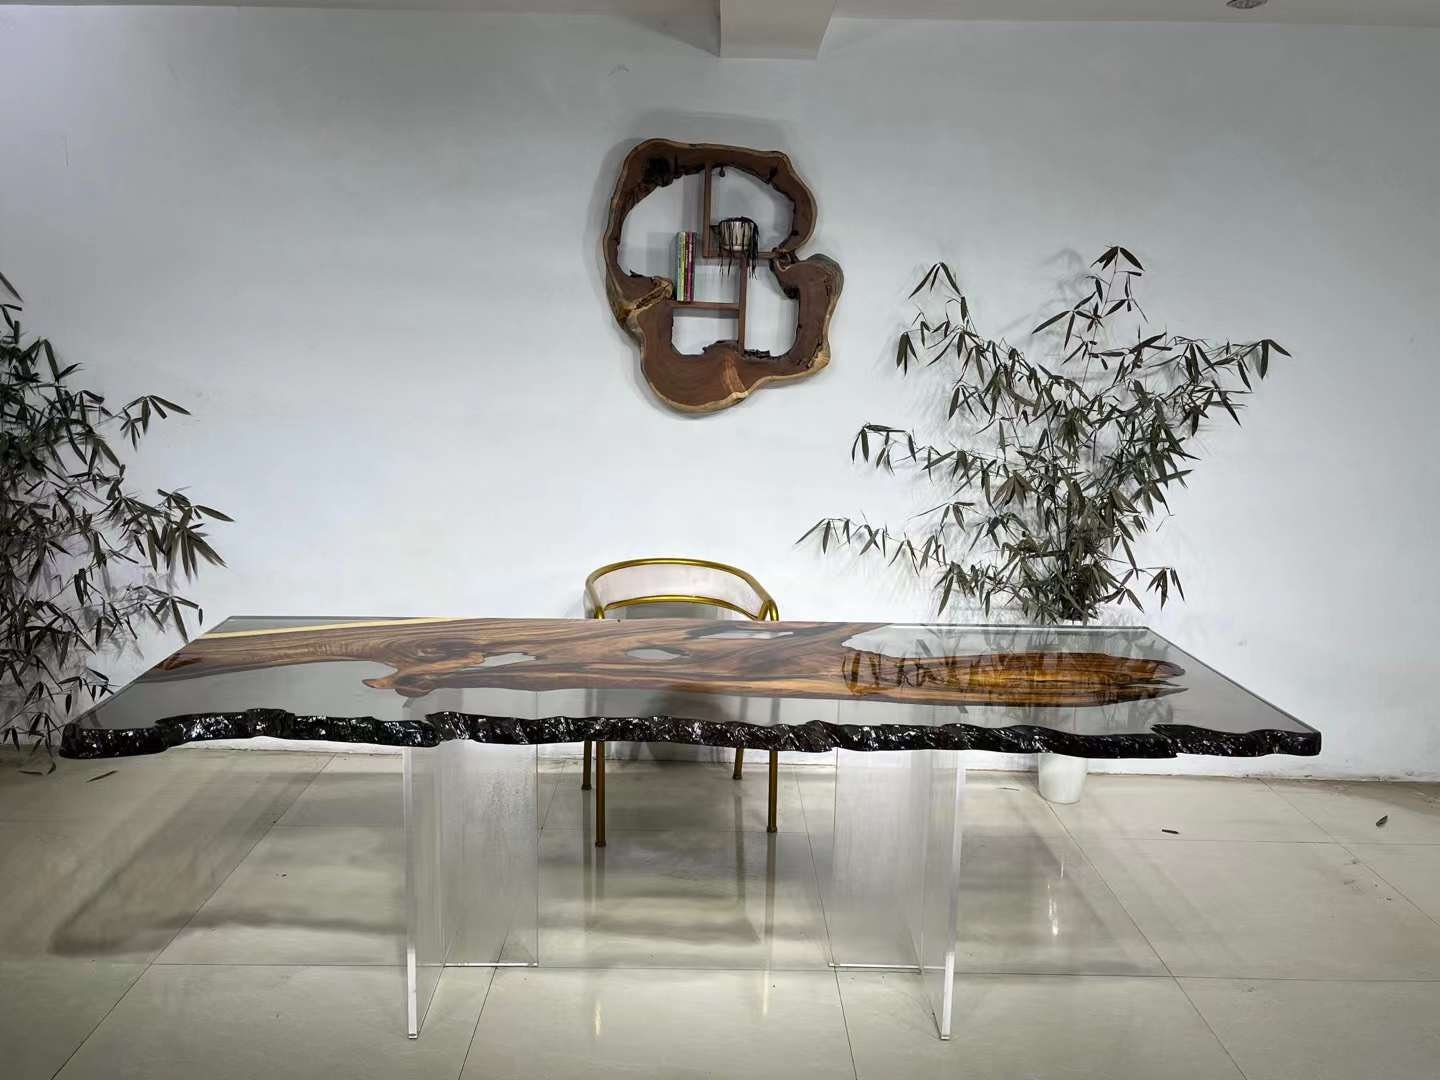 تصميم مخصص، طاولة طعام راتنجات الايبوكسي ذات الحافة الحية، طاولة ذات حافة حية من الايبوكسي، طاولة إيبوكسي